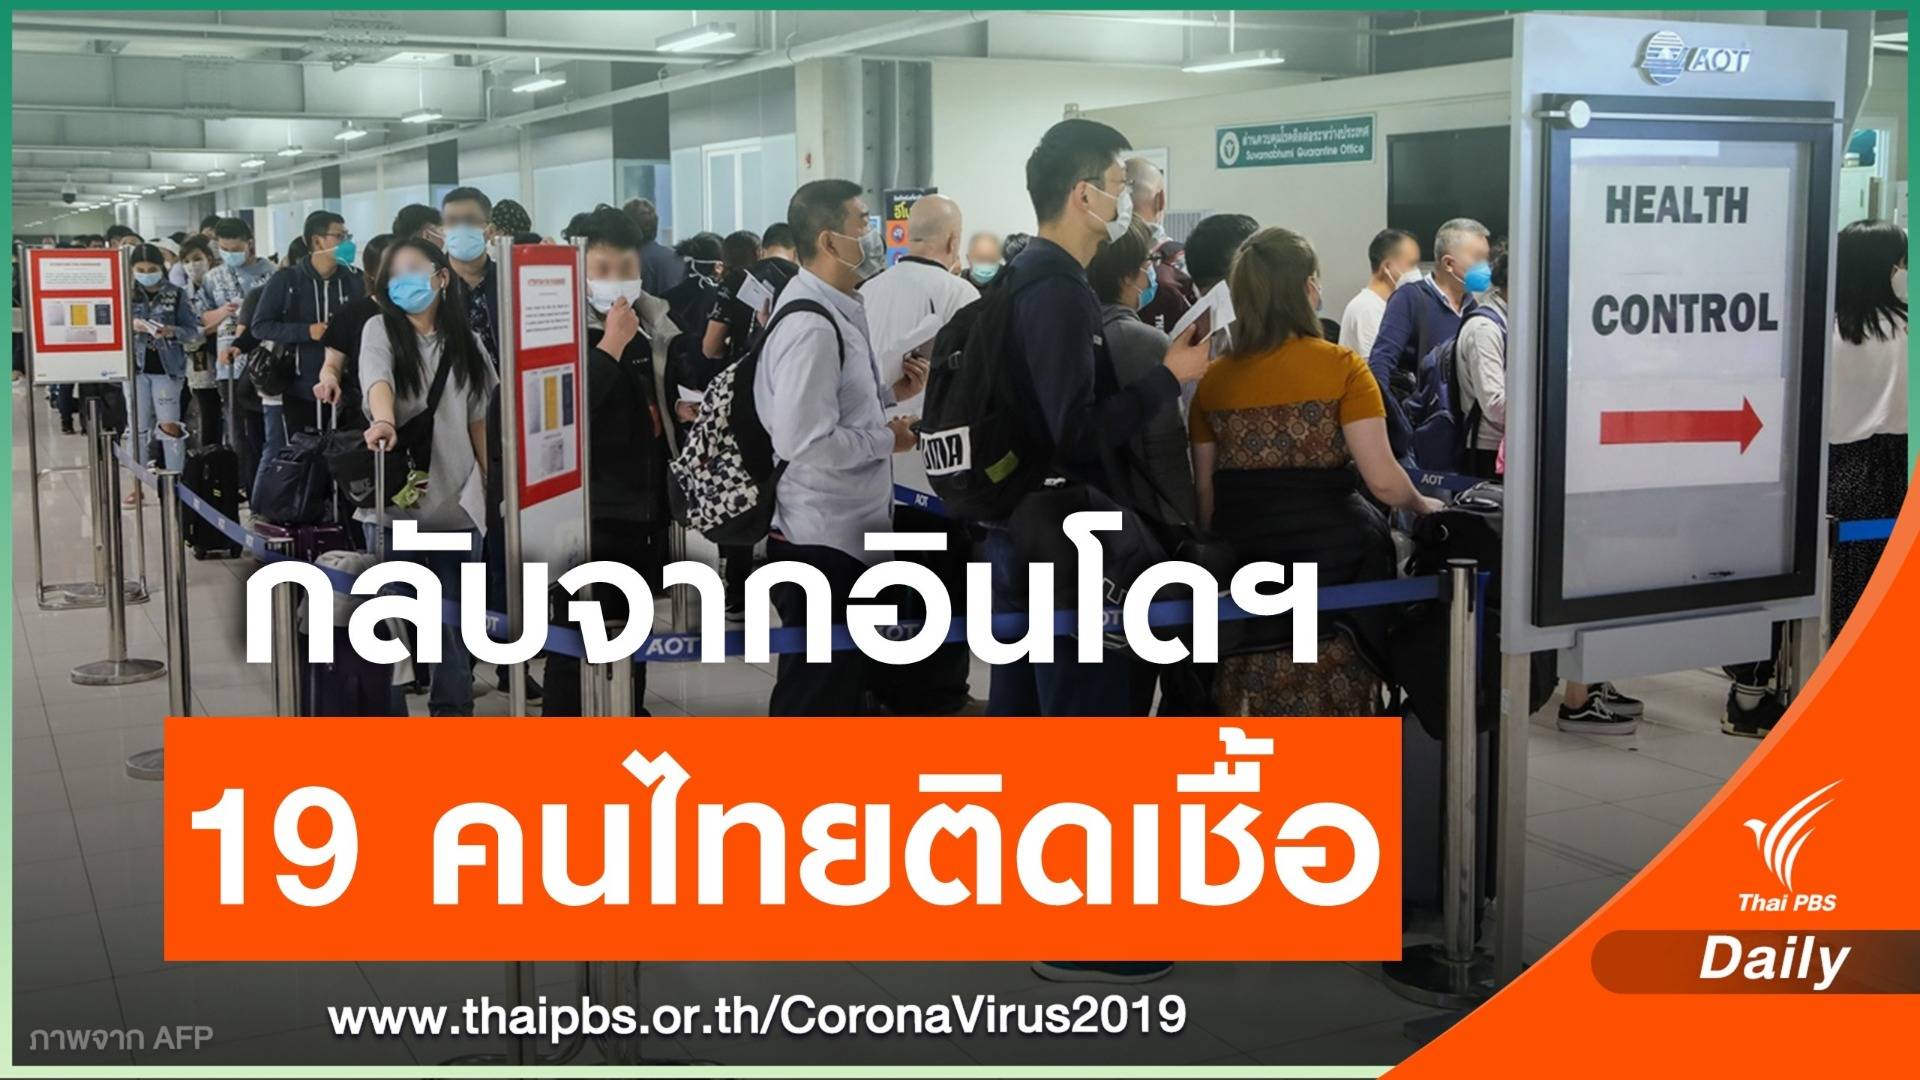 "สนามบินสุวรรณภูมิ" พบคนไทยกลับจากอินโดฯ ติดไวรัส 19 คน